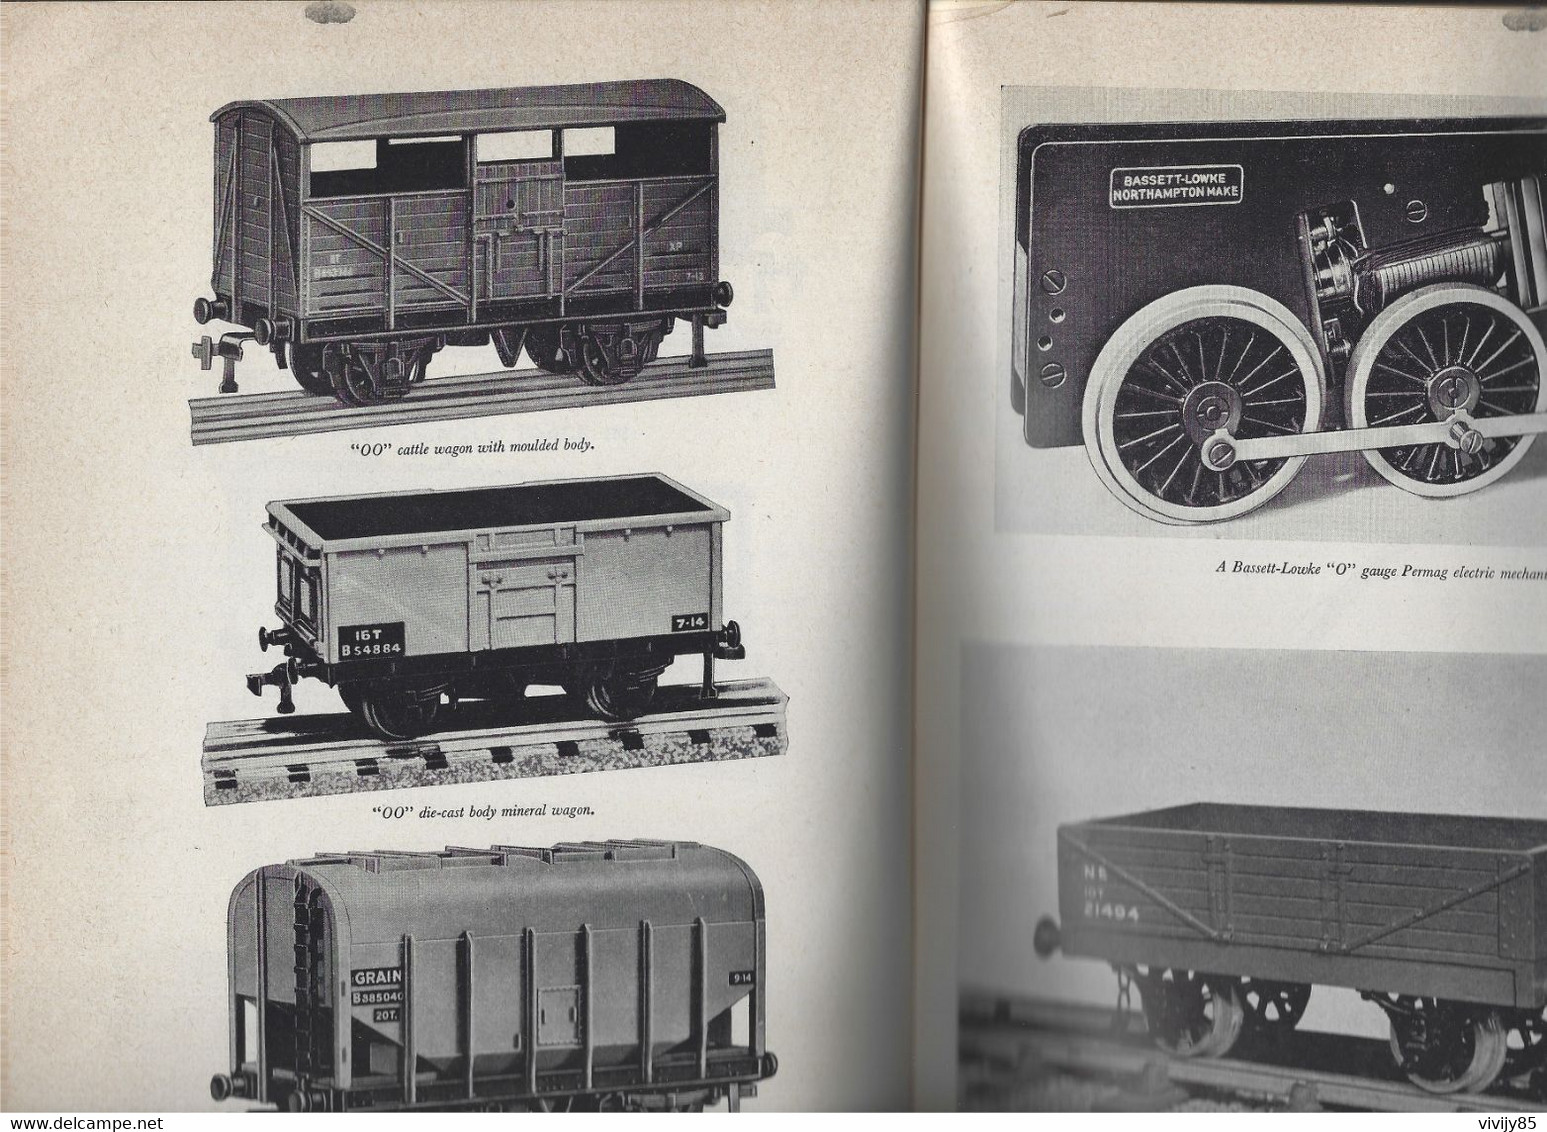 Livre illustré de 144 pages " The boys' book of Model RAILWAYS " - trains de collection , équipement , hornby